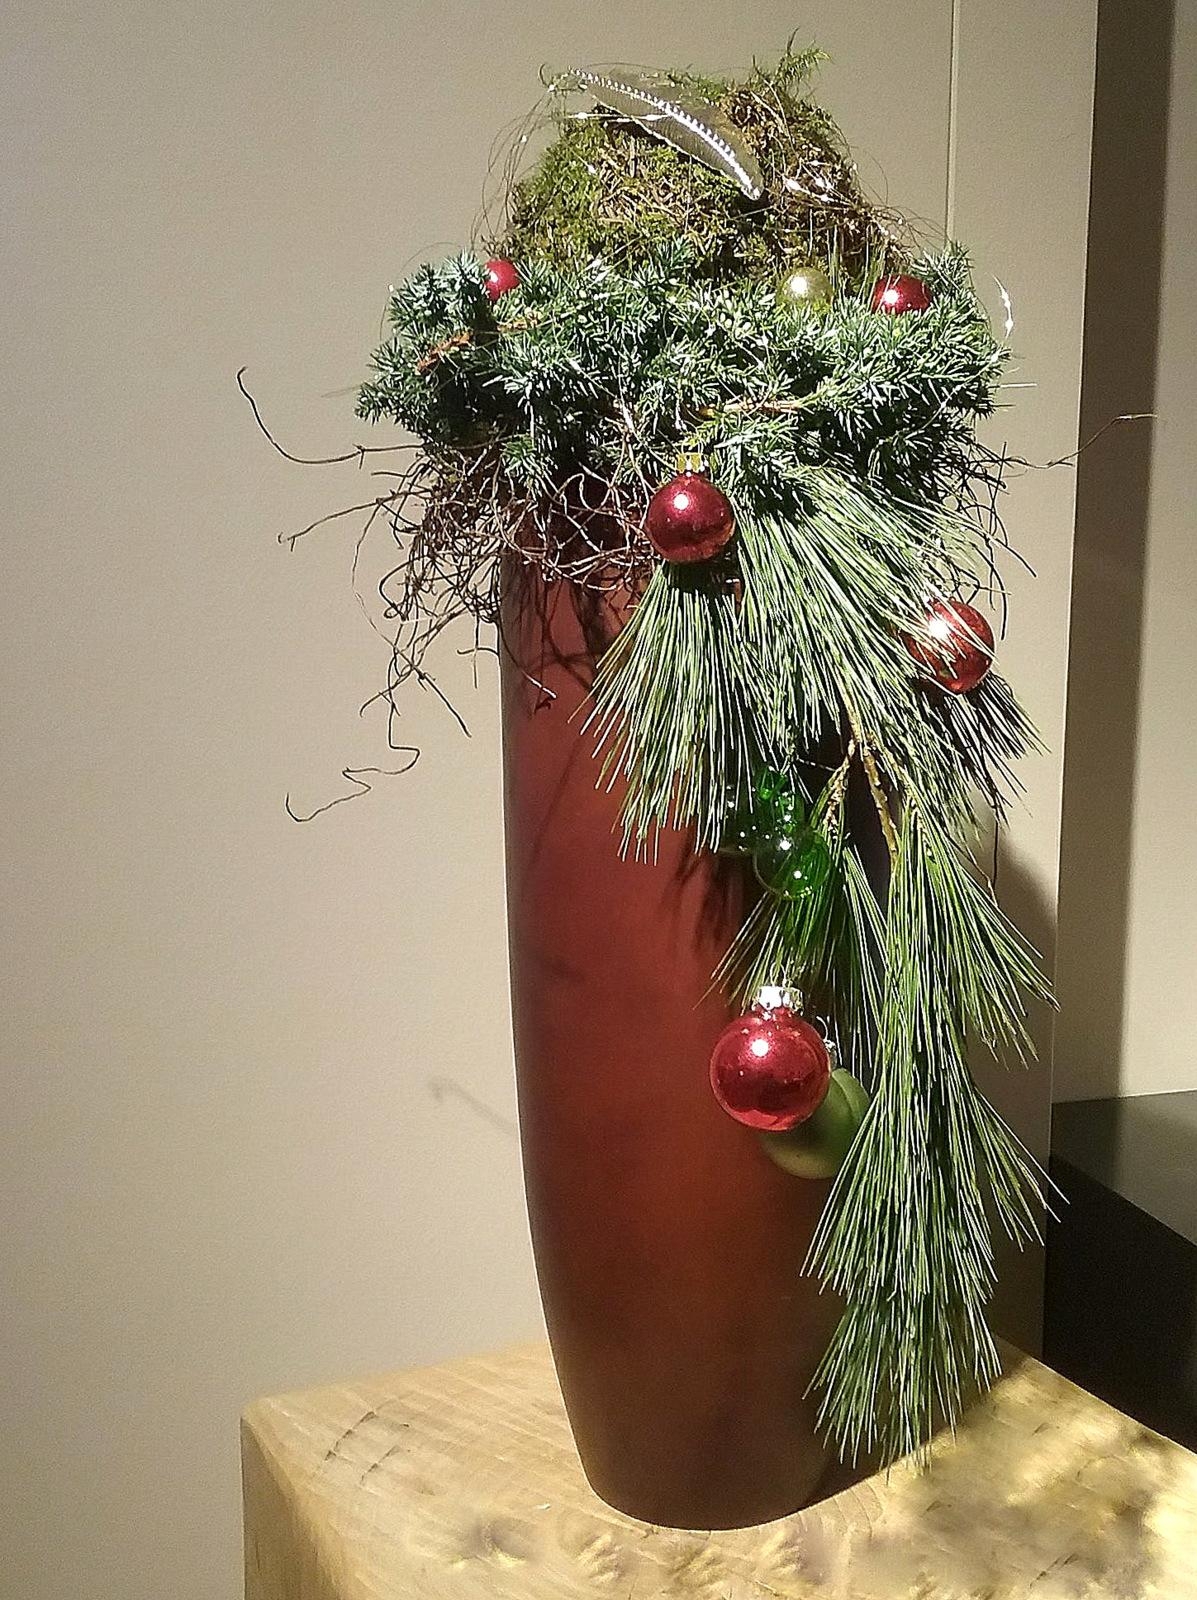 #dekoratives zur #Advent & #Weihnachtszeit 🎄 #elegante #Vase in #weihnachtlichem #Kleid. #coole #geschenkidee 🎁